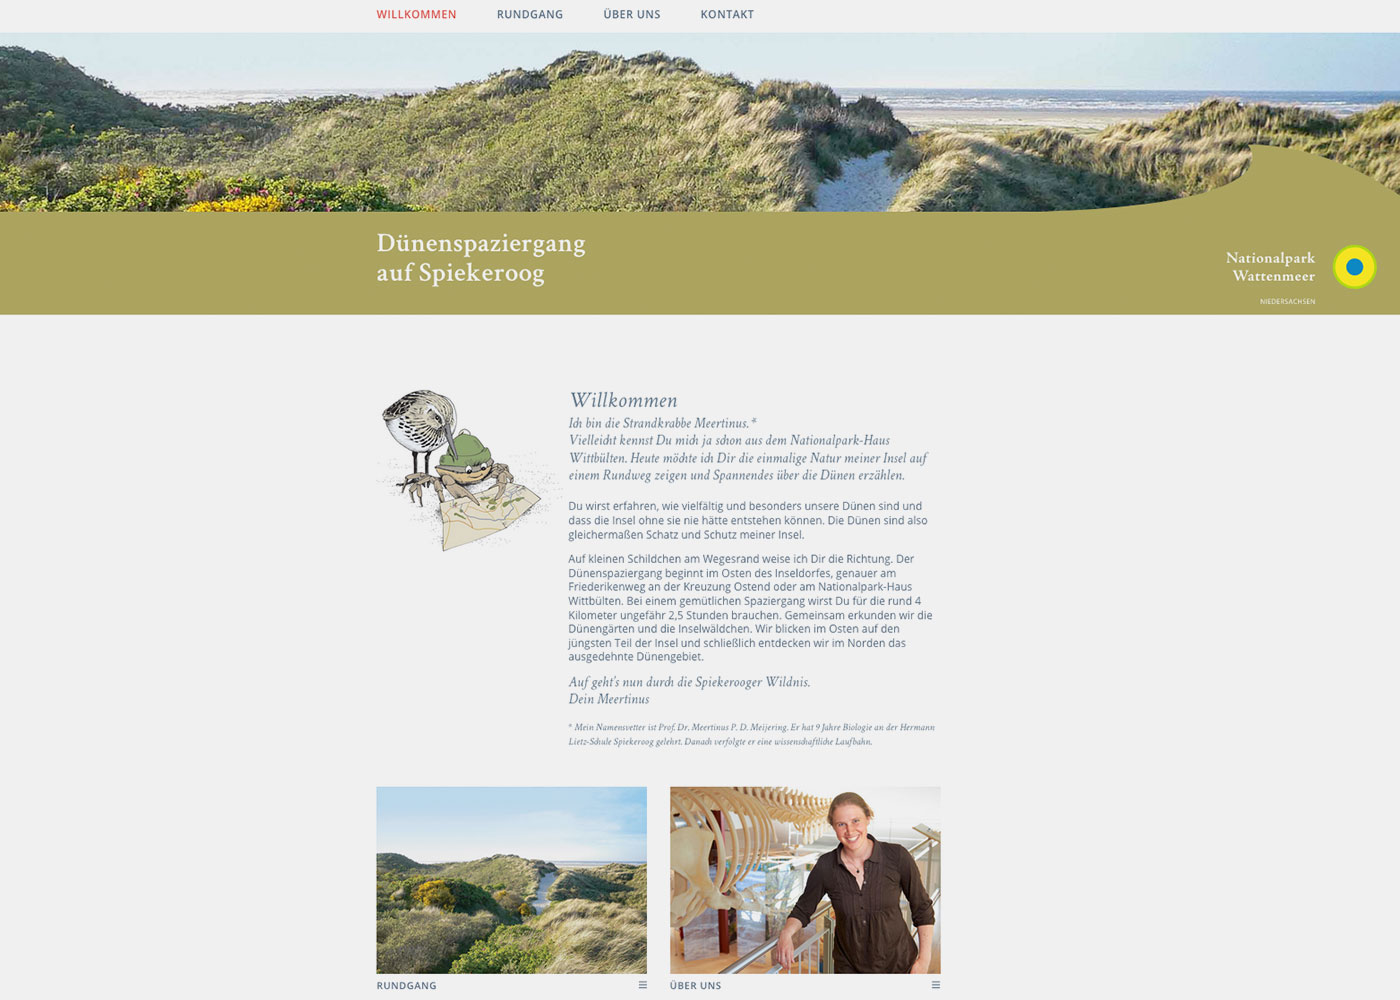 Informations-Material für Nationalpark Wattenmeer Niedersachsen - Teil 3